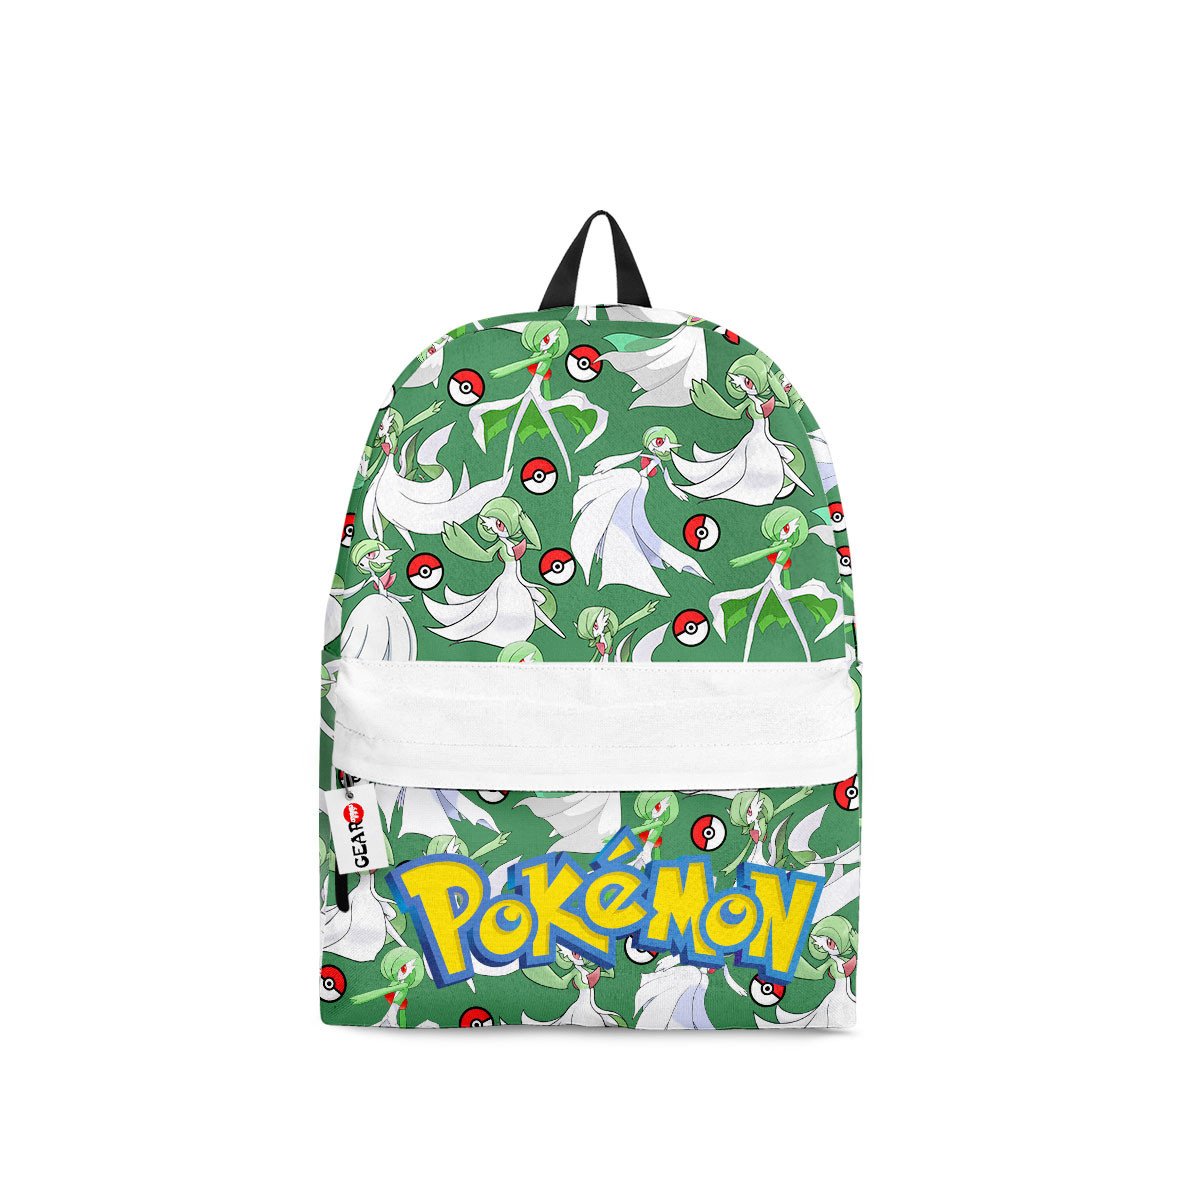 BEST Gardevoir Pokemon Anime Printed 3D Leisure Backpack